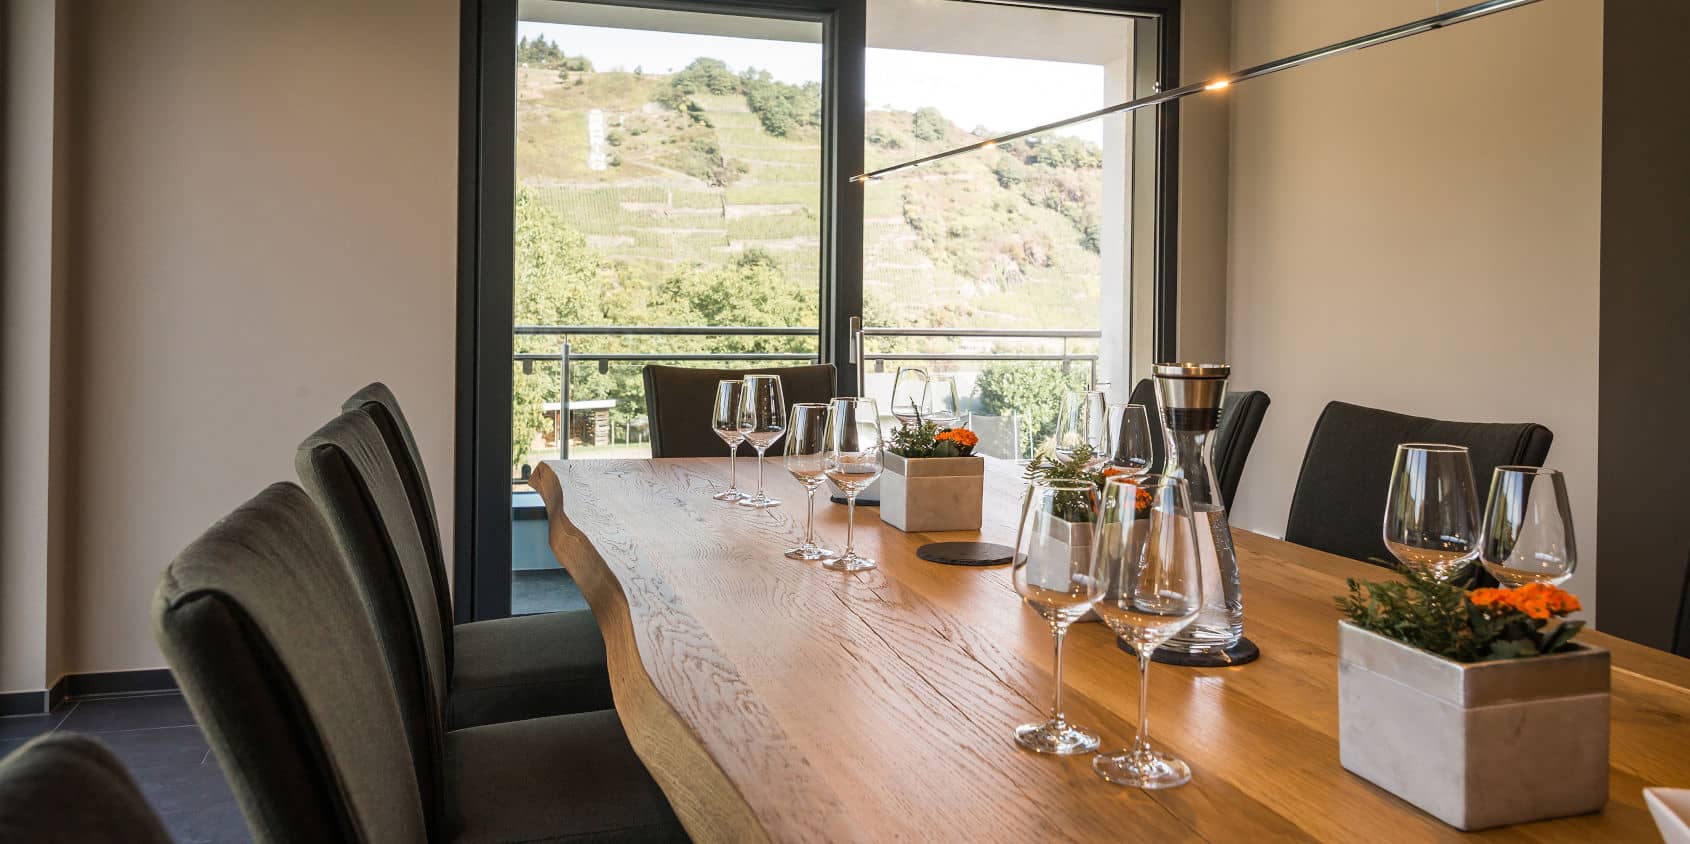 Holztisch mit Weingläsern vor großem Panoramafenster